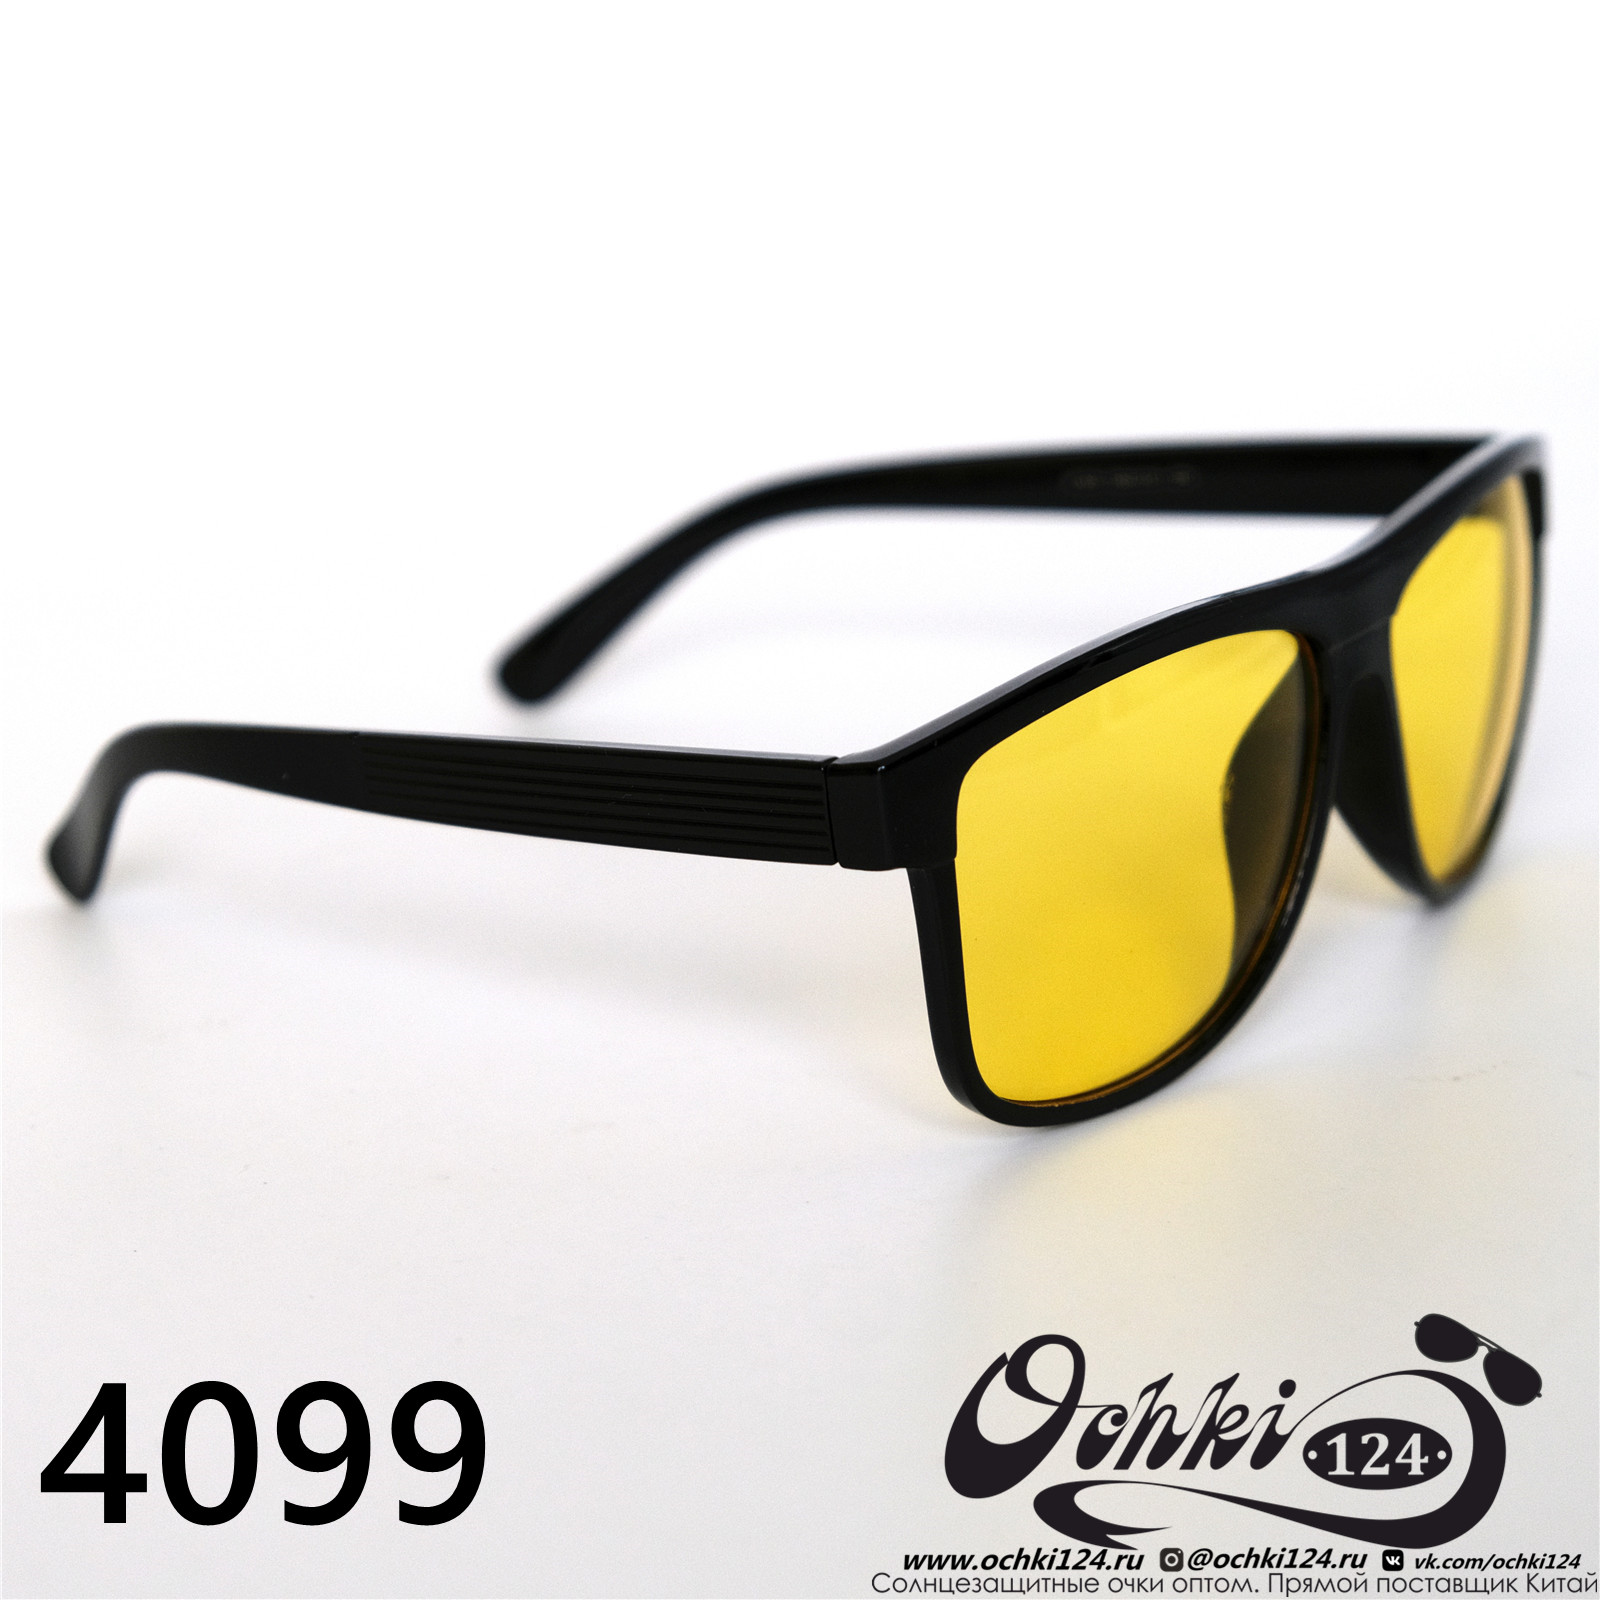  Солнцезащитные очки картинка 2022 Мужские Стандартные Materice 4099-8 